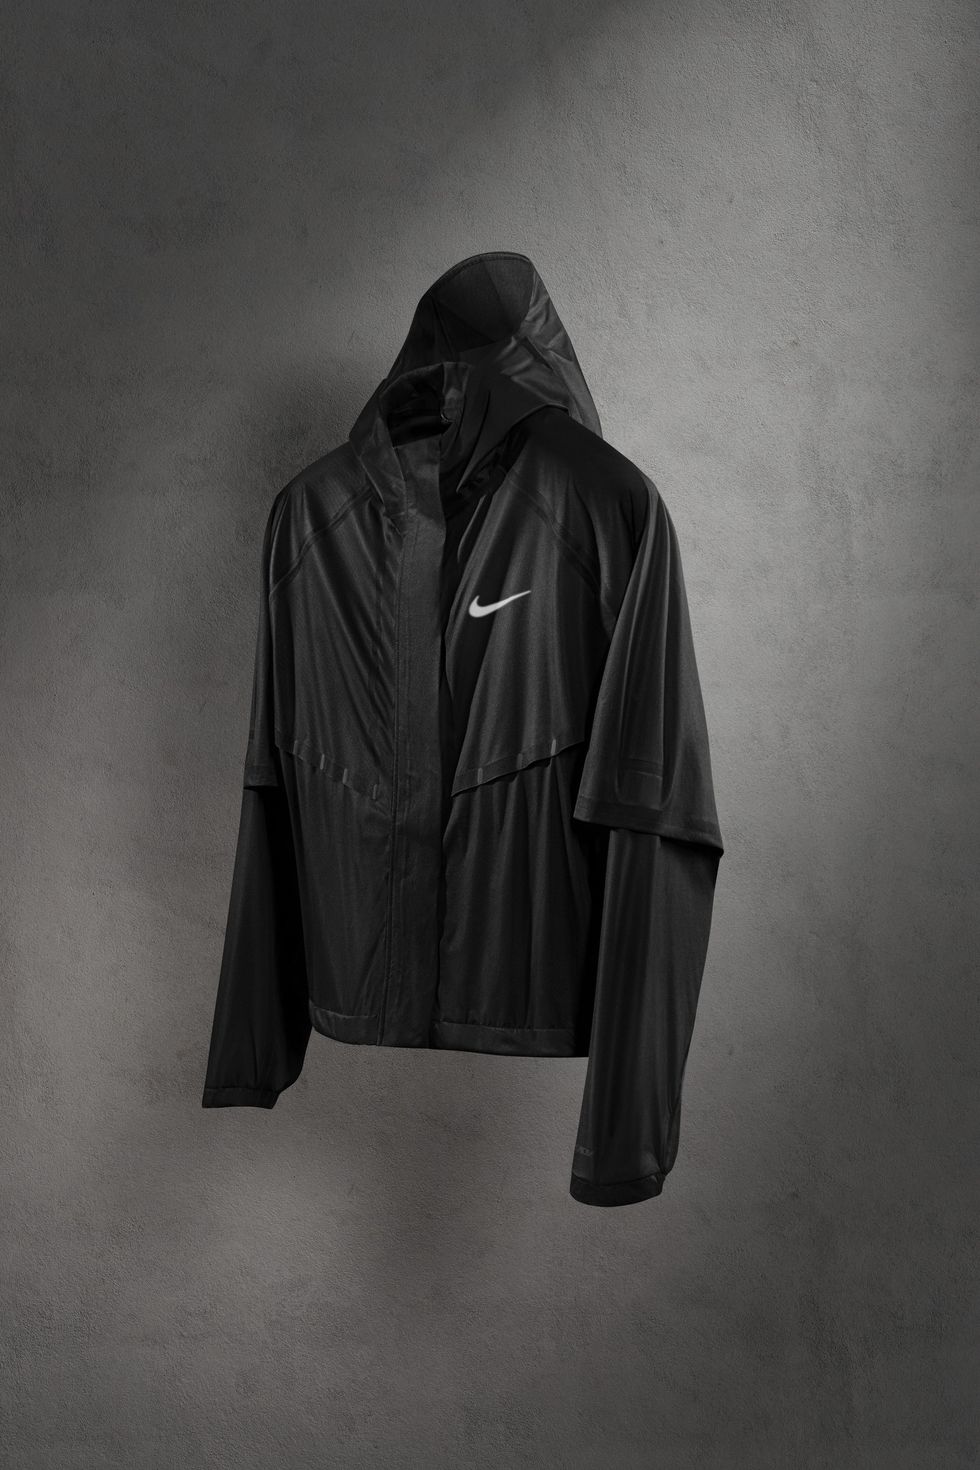 celos seré fuerte carbón La chaqueta interactiva de Nike que regula la temperatura corporal y la  ventilación mientras corres